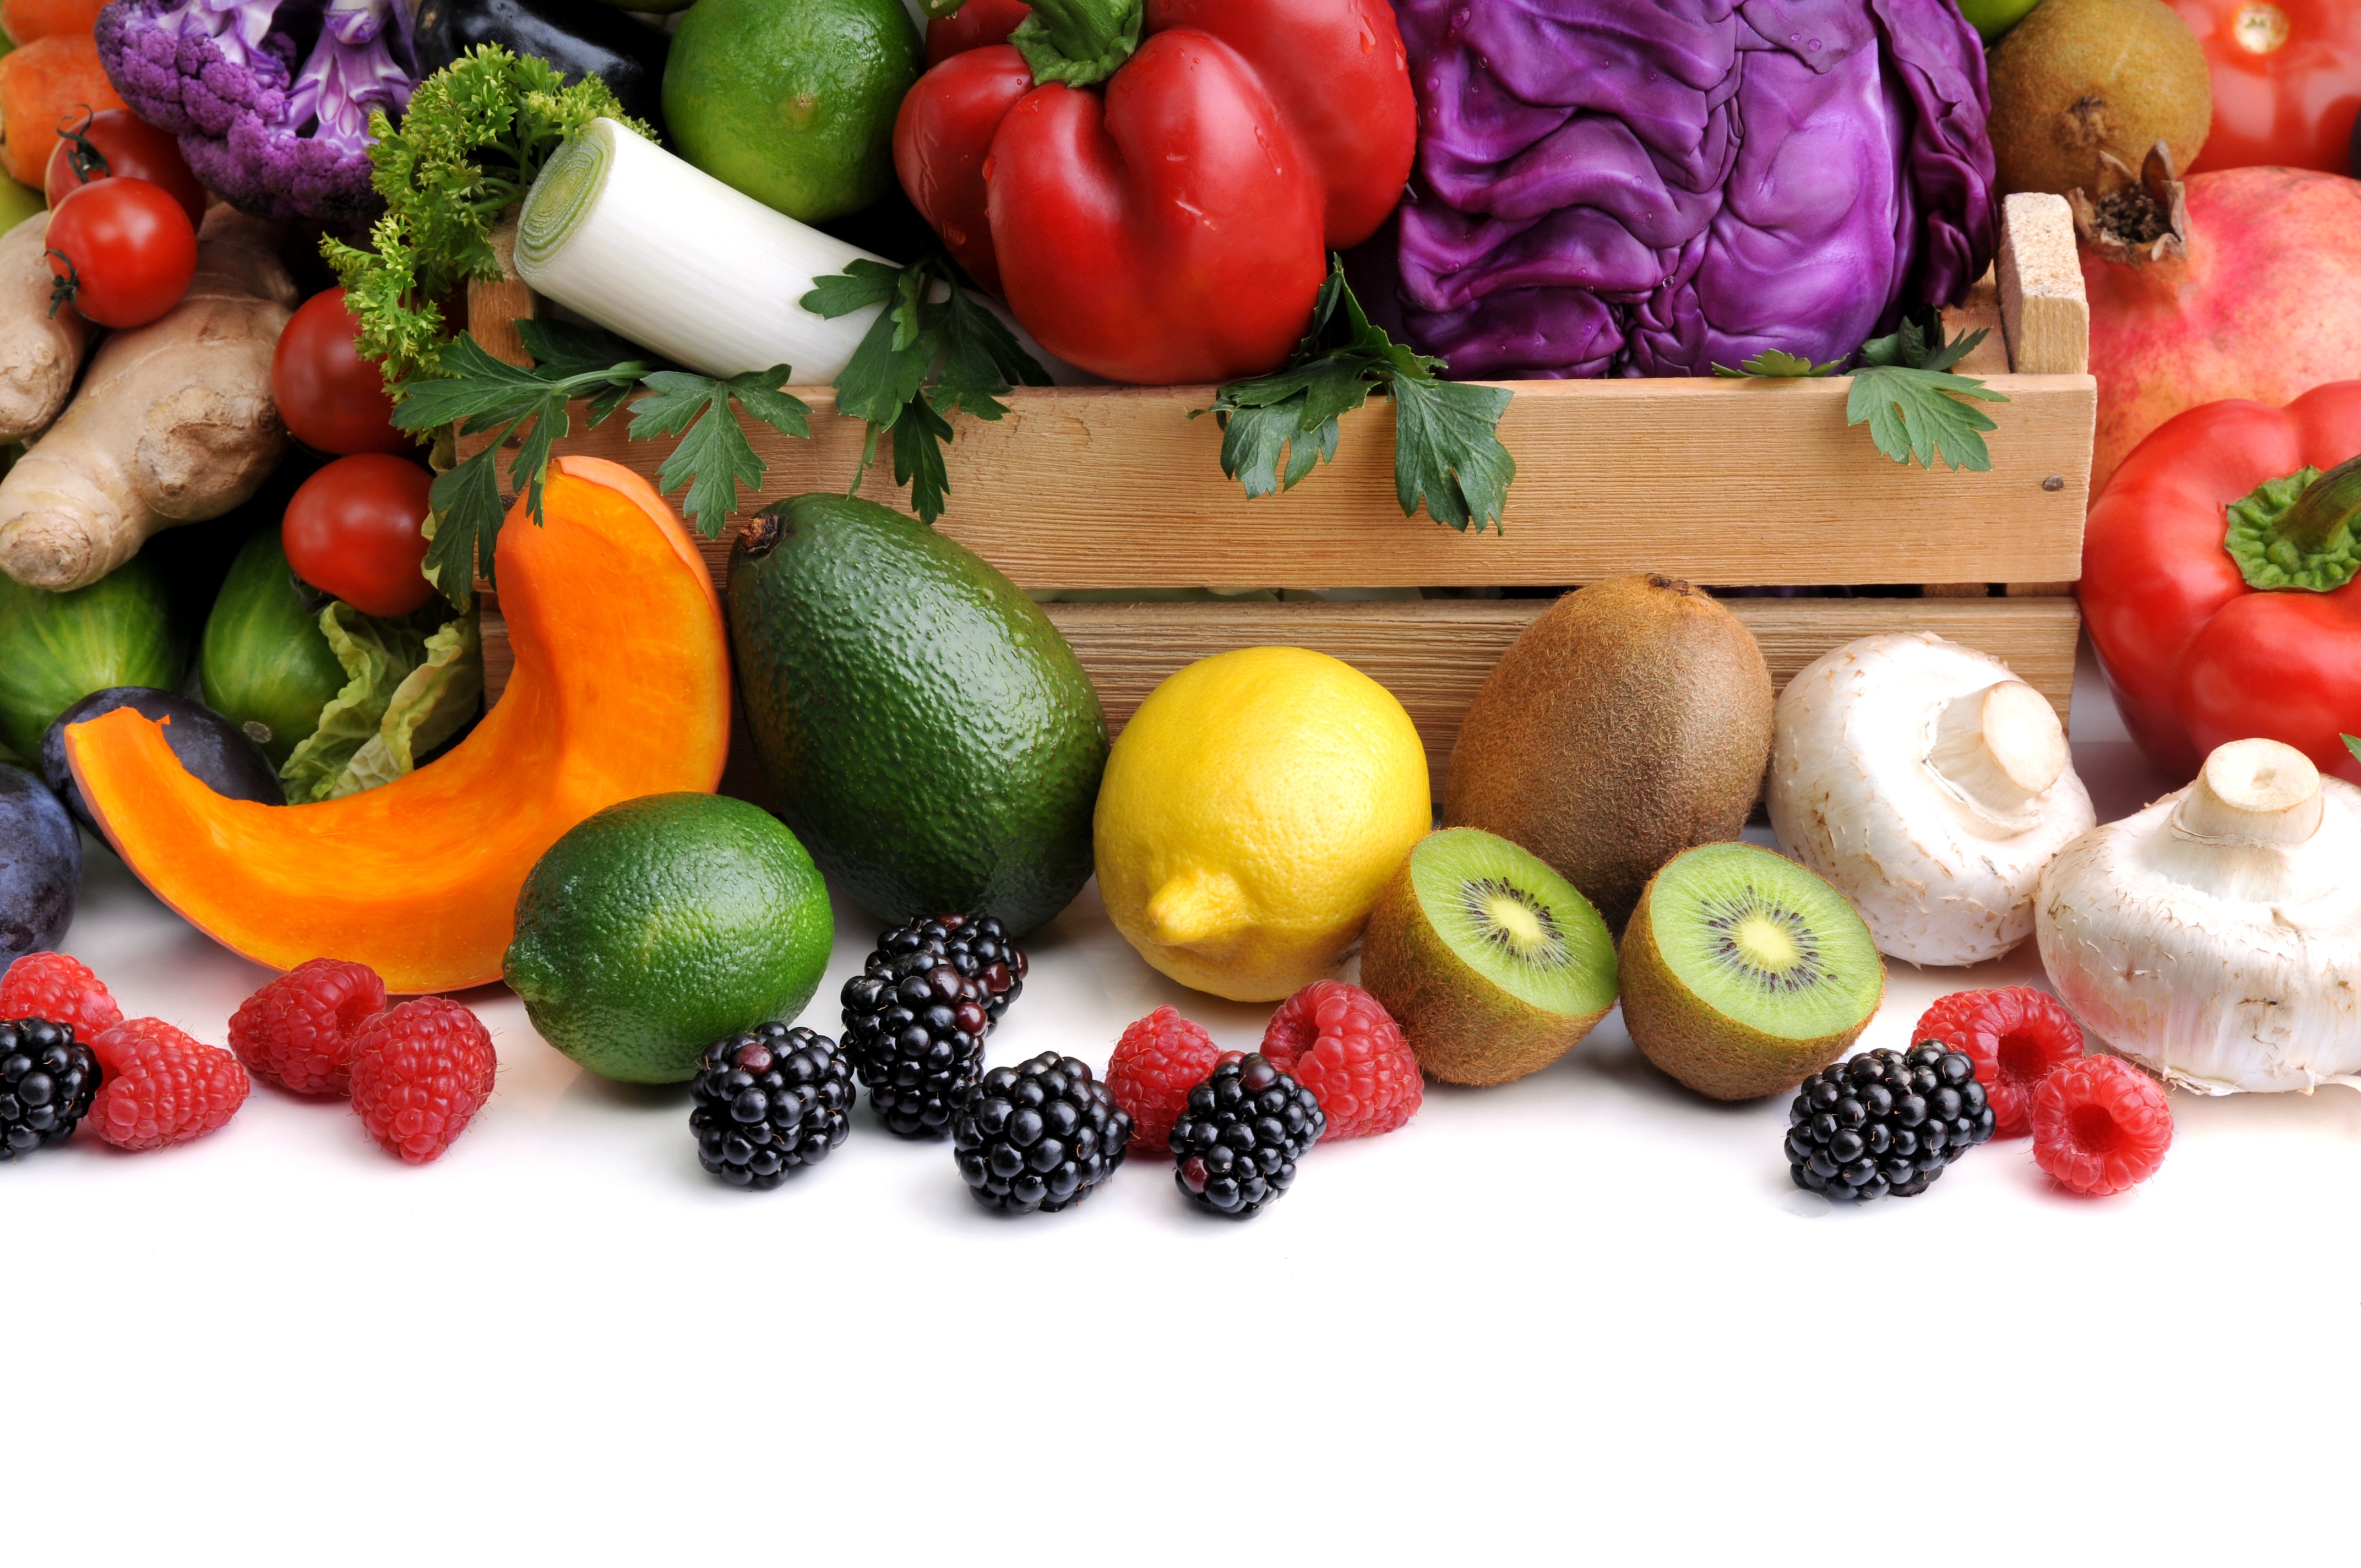 Colourful and crunchy fruit and vegetables can. Овощи и фрукты. Овощи, фрукты, ягоды. Продукты овощи. Красивые овощи.